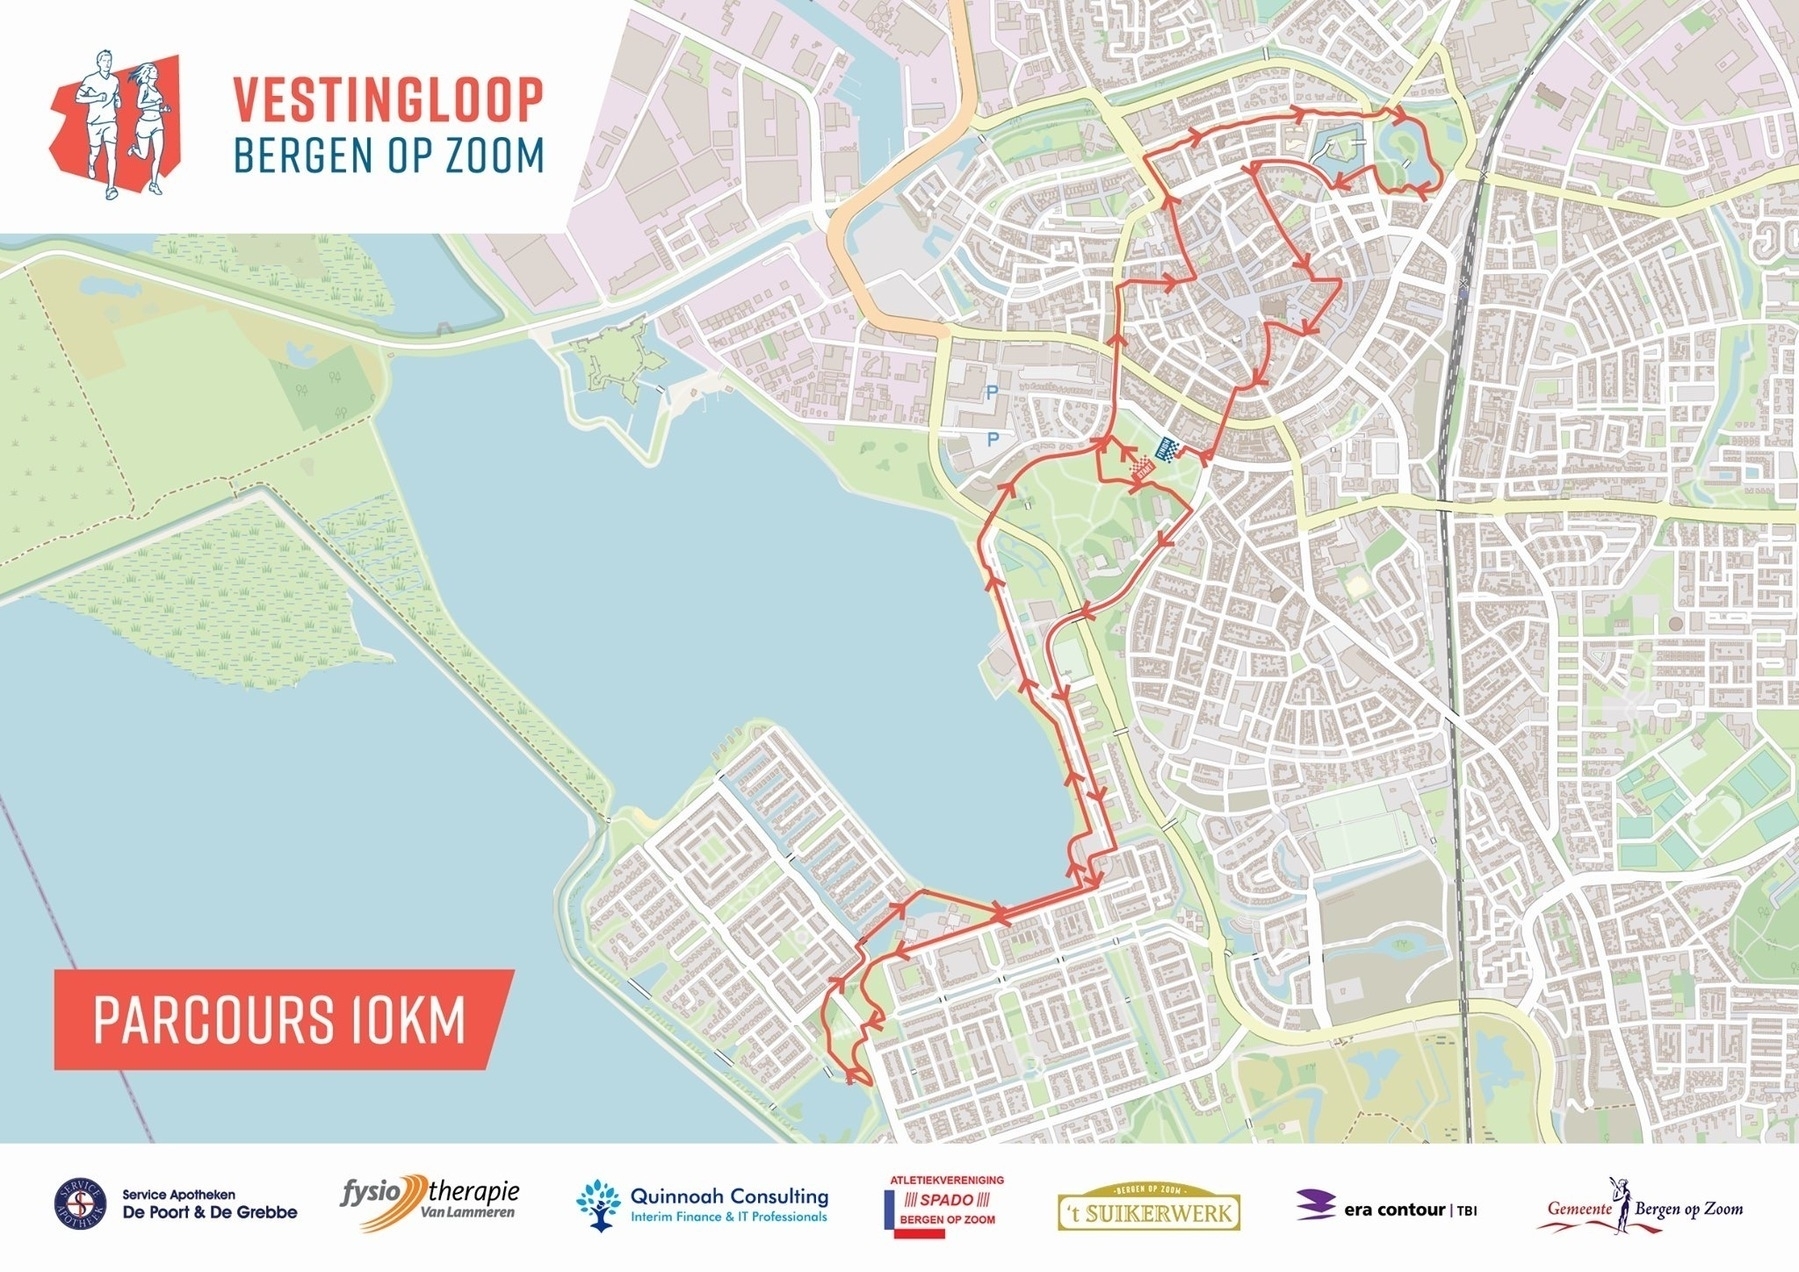 Mijn volgende corona-proof 10 km wedstrijd, de Vestingloop Bergen op Zoom.